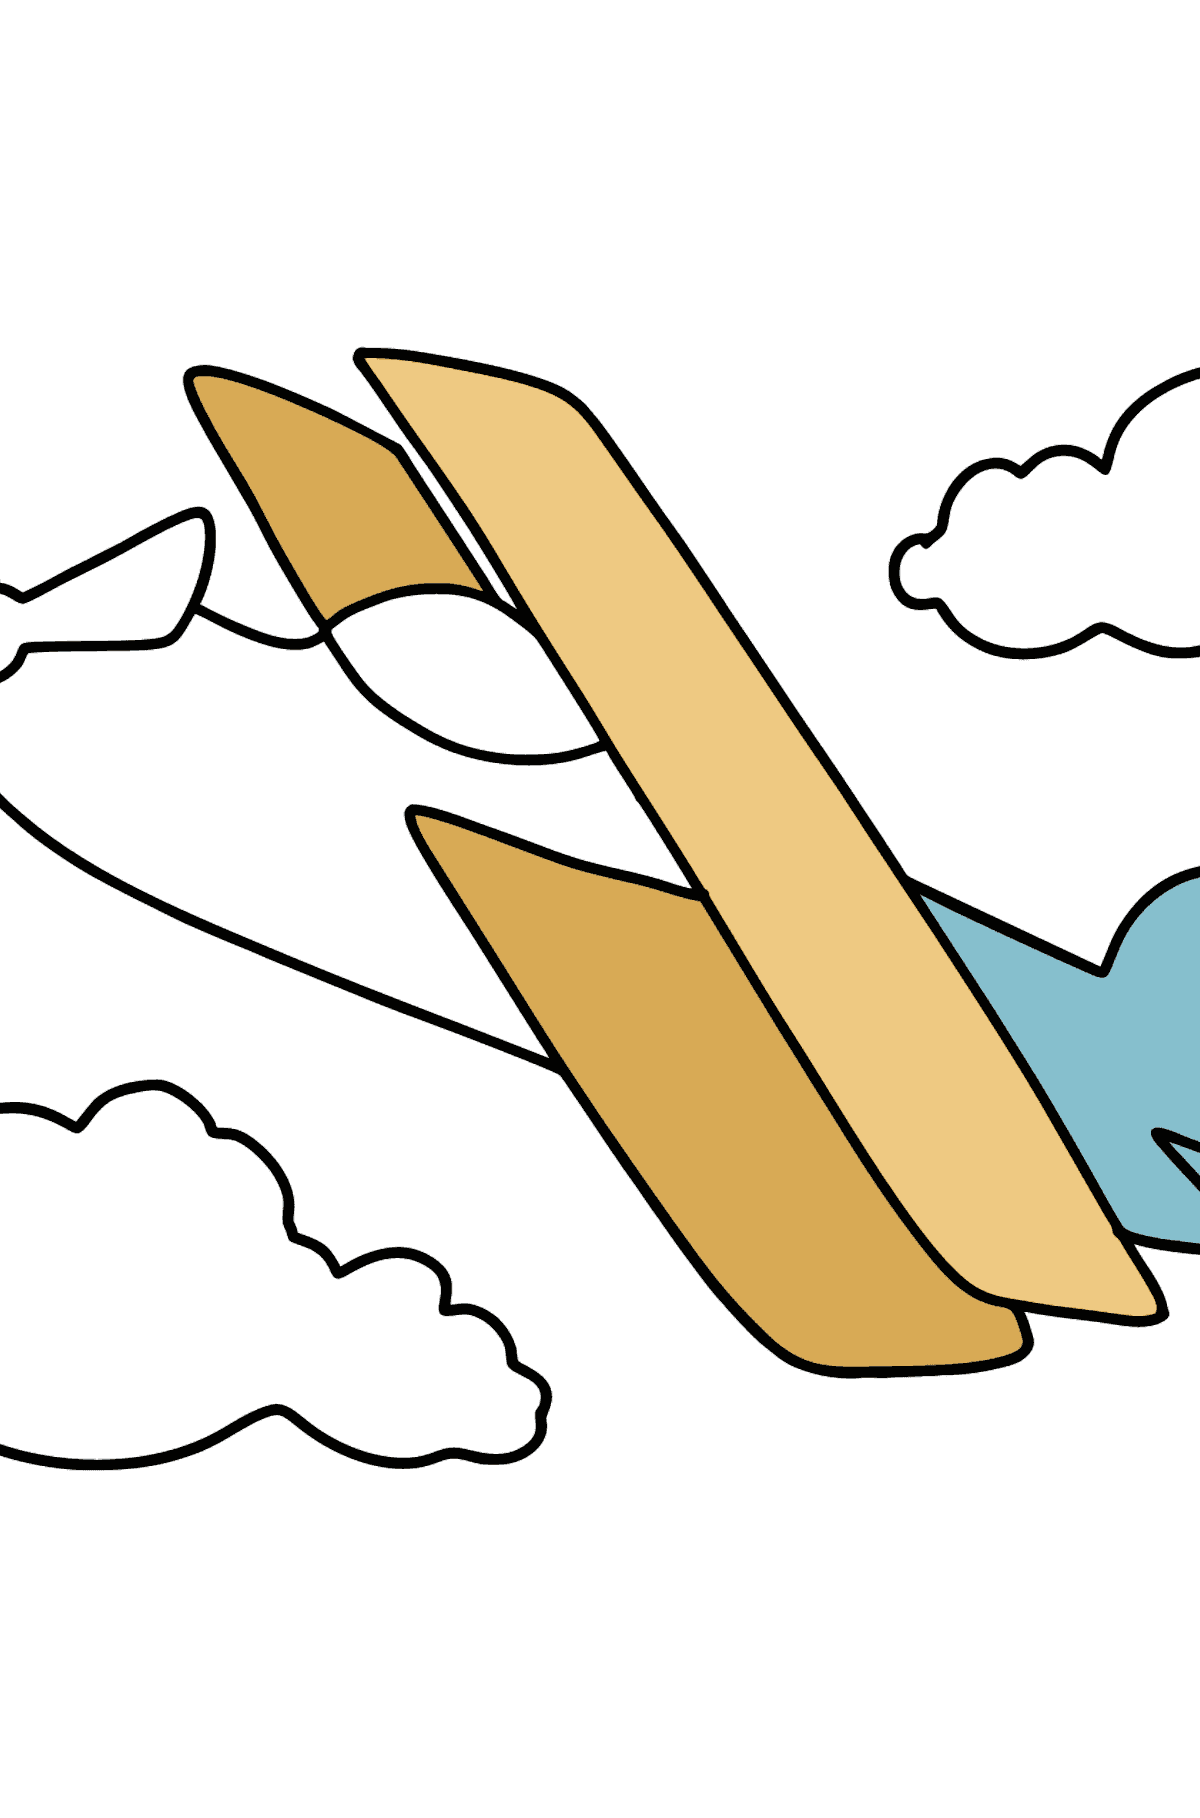 Desenho para colorir de avião simples - Imagens para Colorir para Crianças